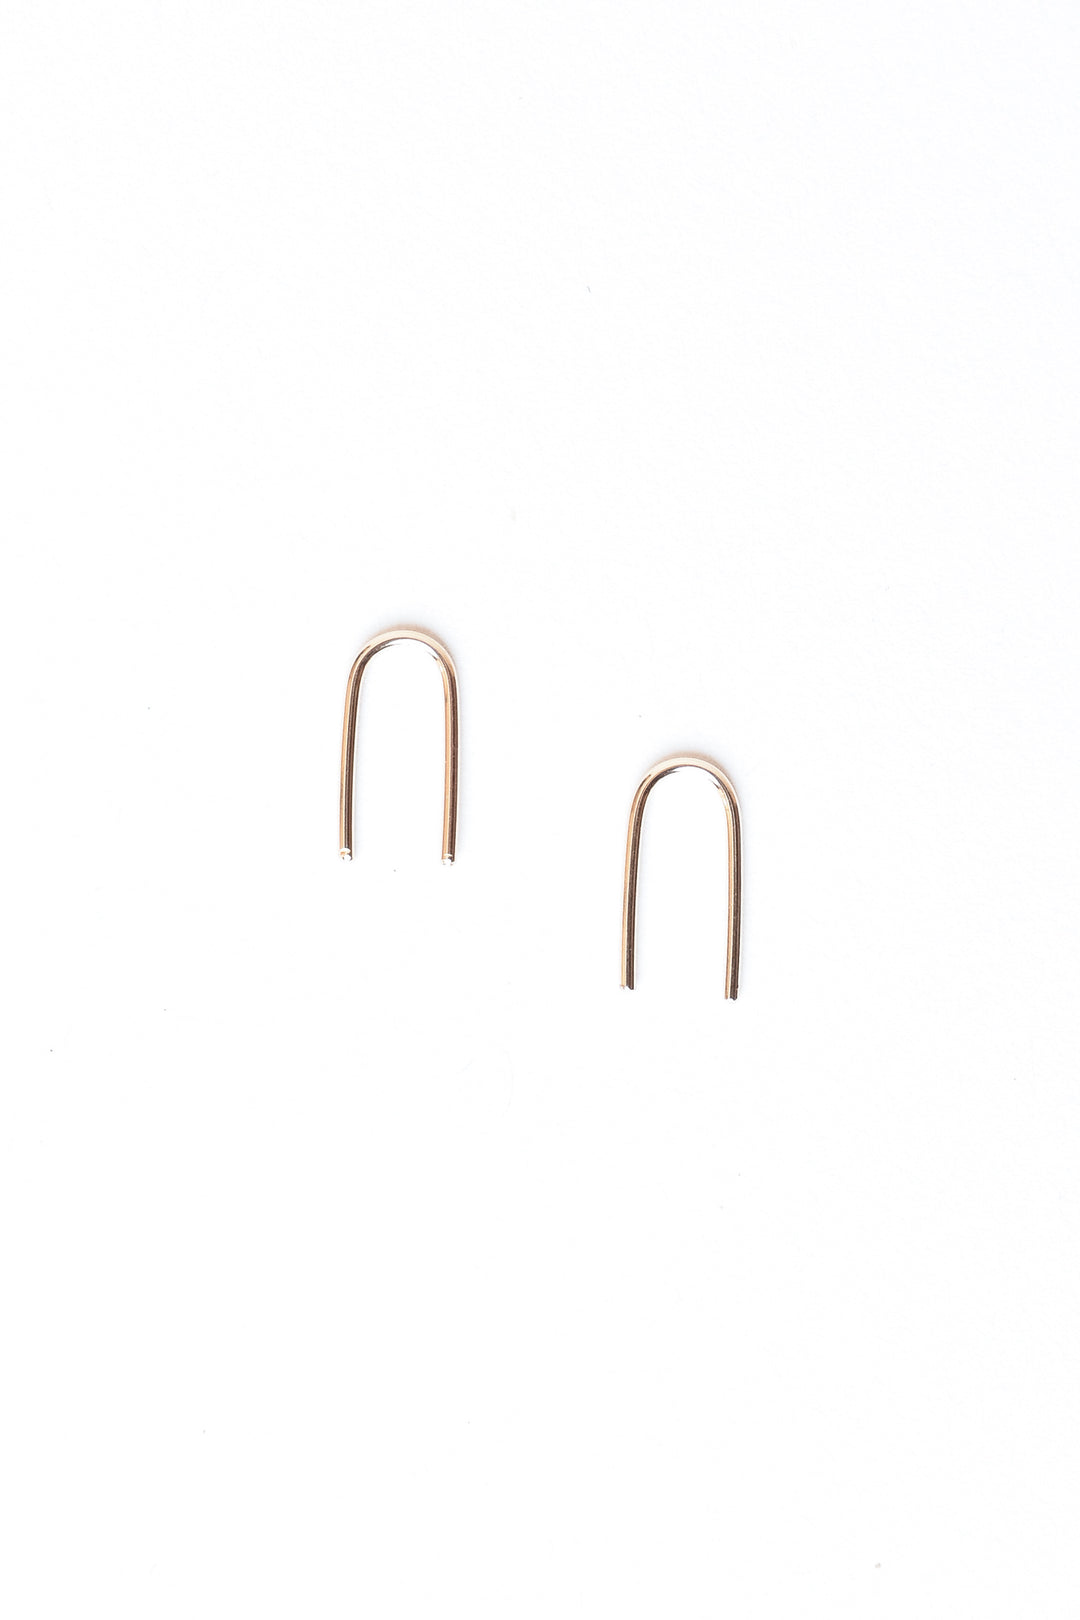 U-Shaped Earrings - Gold, Baleen, - Frances Jaye